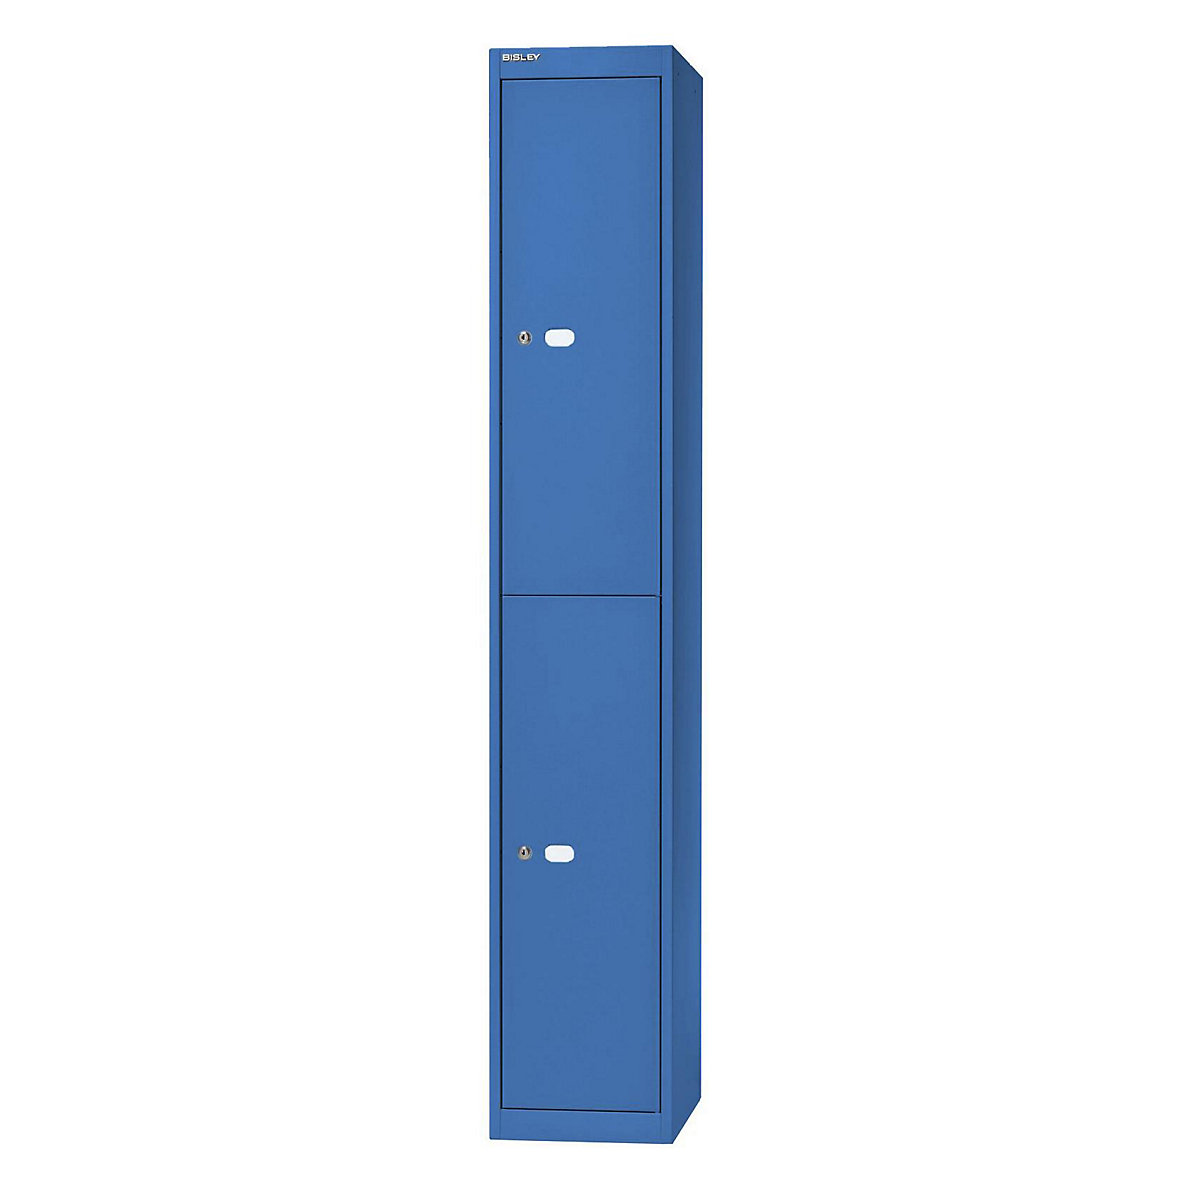 BISLEY OFFICE Garderobensystem, Tiefe 457 mm, 2 Fächer mit je 1 Kleiderhaken, blau